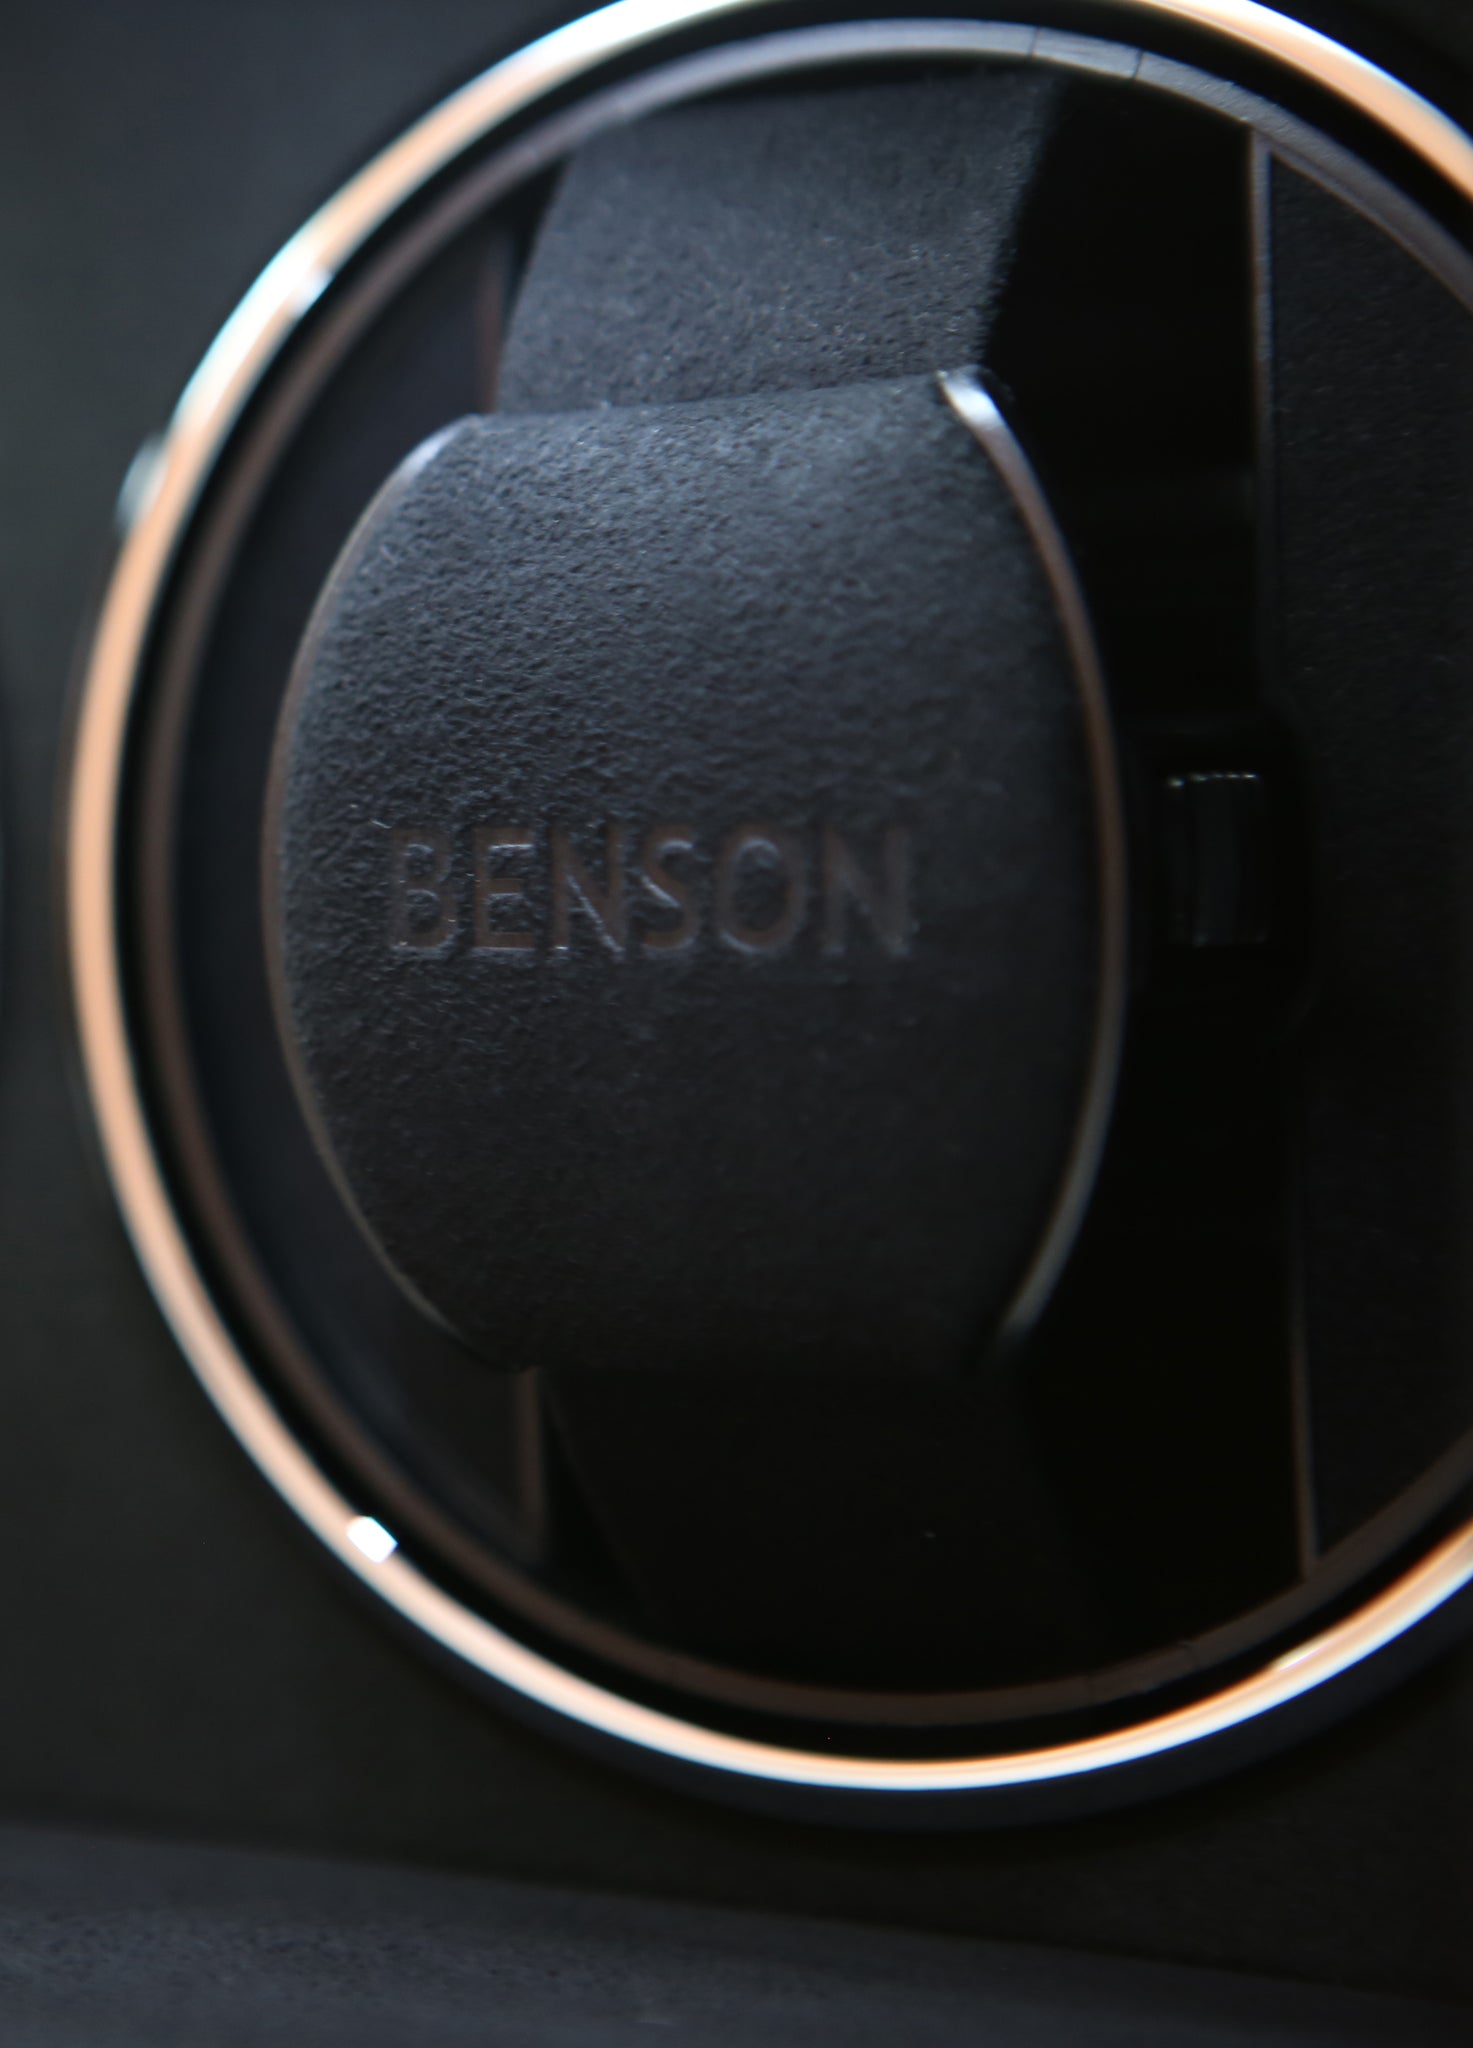 Remontoir de montre Benson Swiss Series